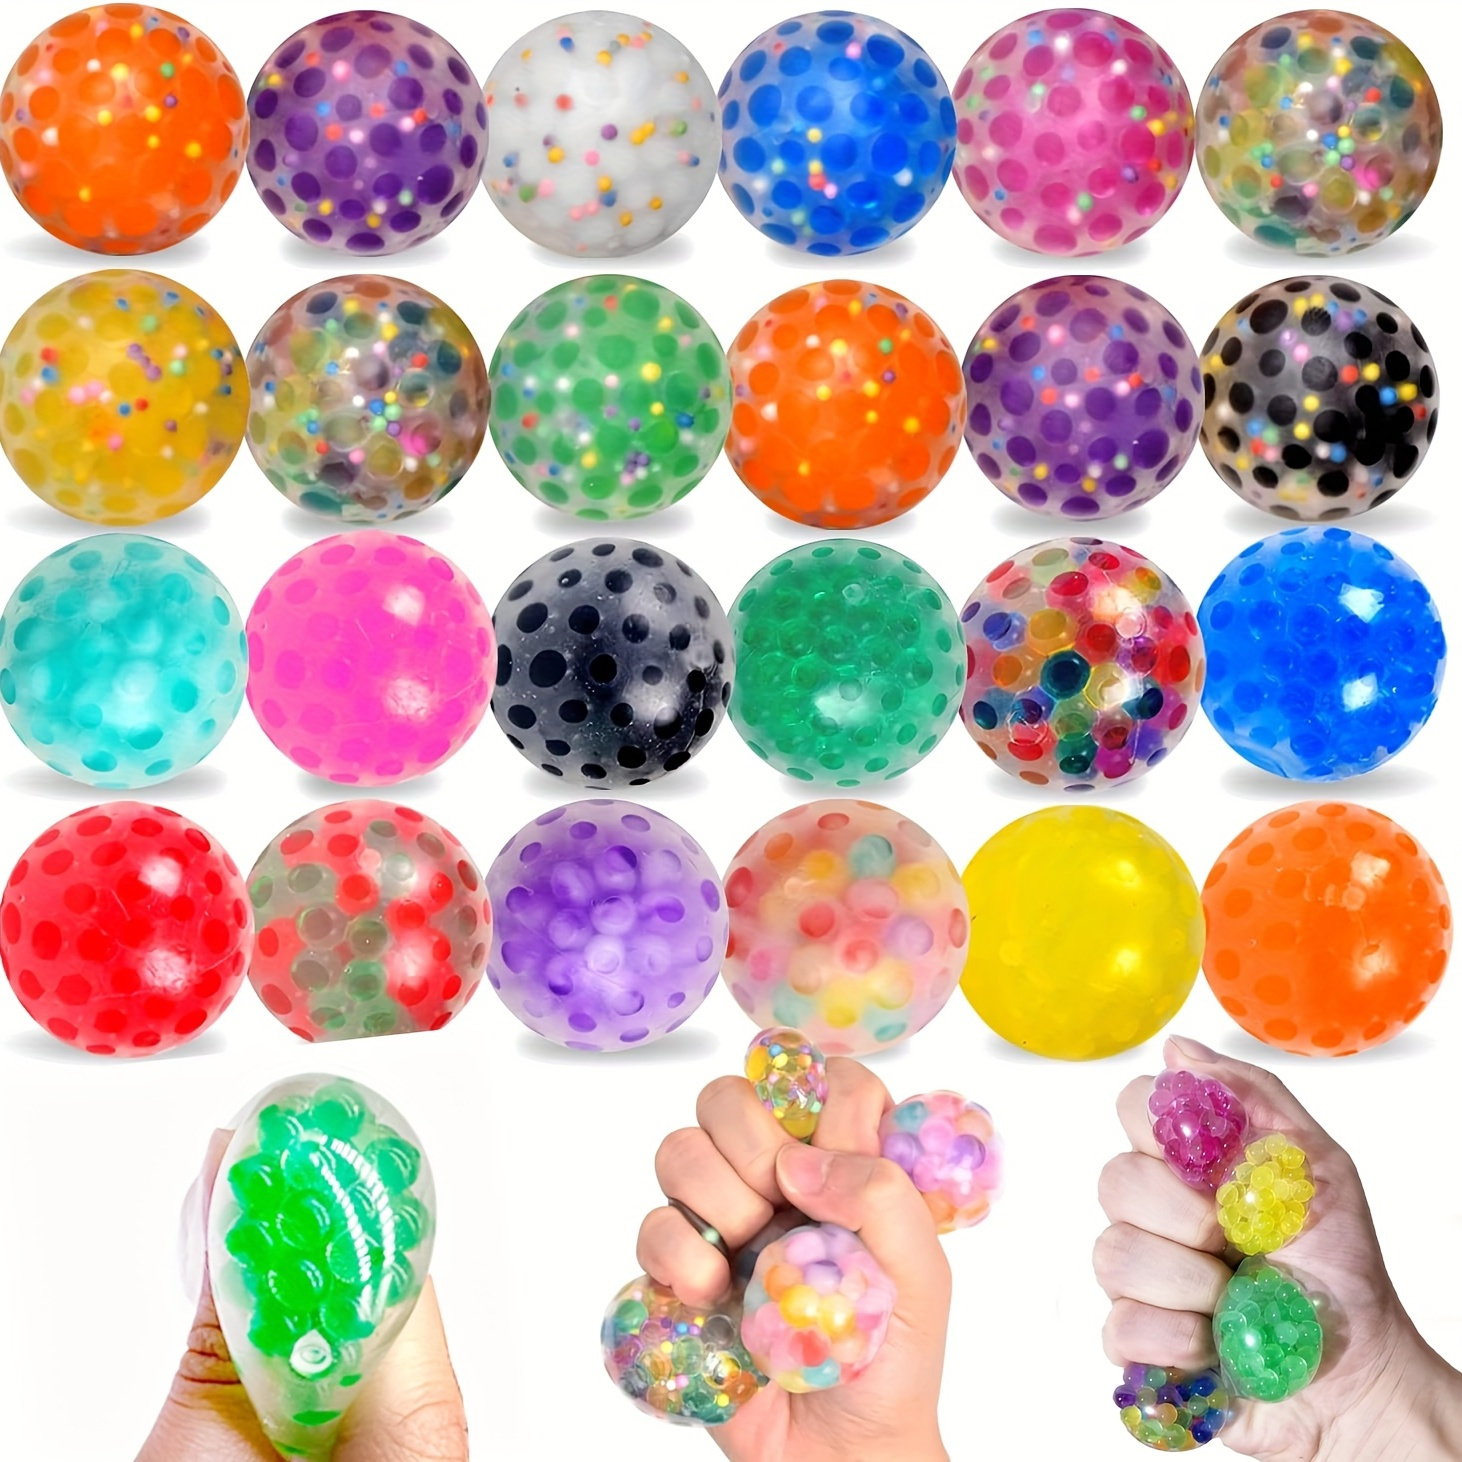 Enfants adultes Jouets 3pcs / set Stress Balls Soulagement de l'anxiété  Boules squishy Fidget Jouets Squeeze Sensory Ball Anti-stress Jouets  Cadeaux